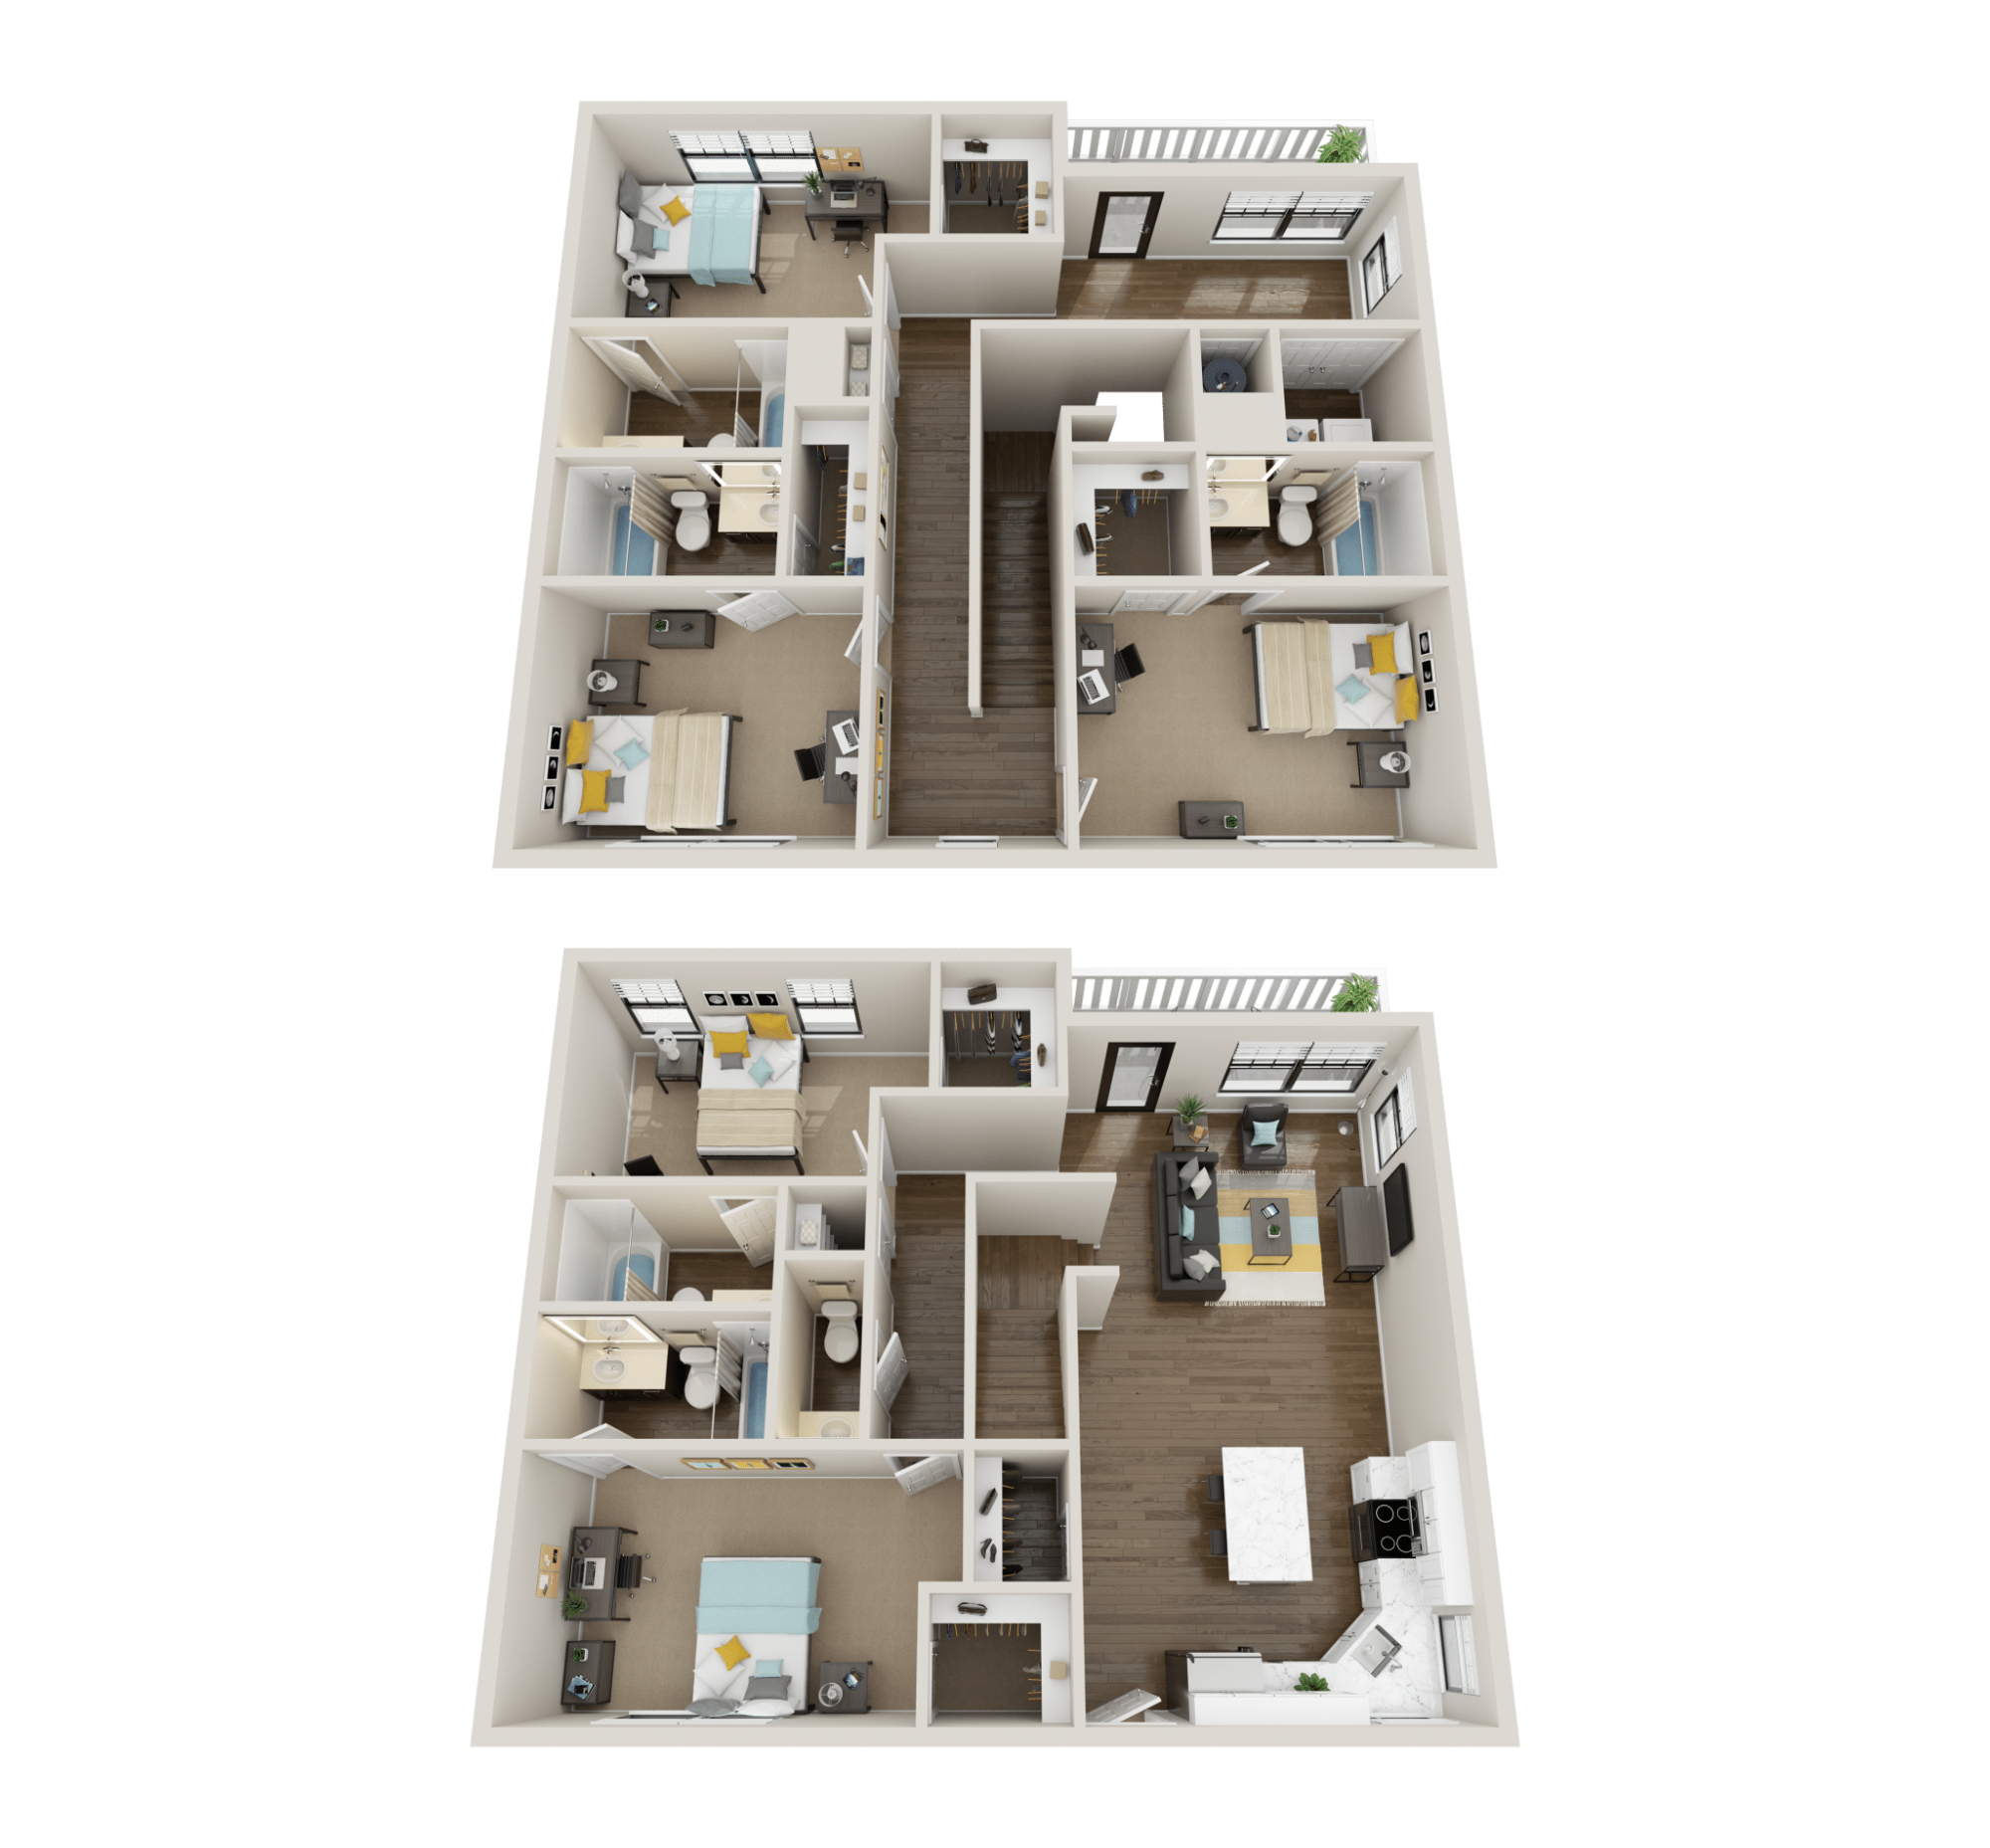 5x5.5 premium floor plan collective at clemson off campus apartments 1